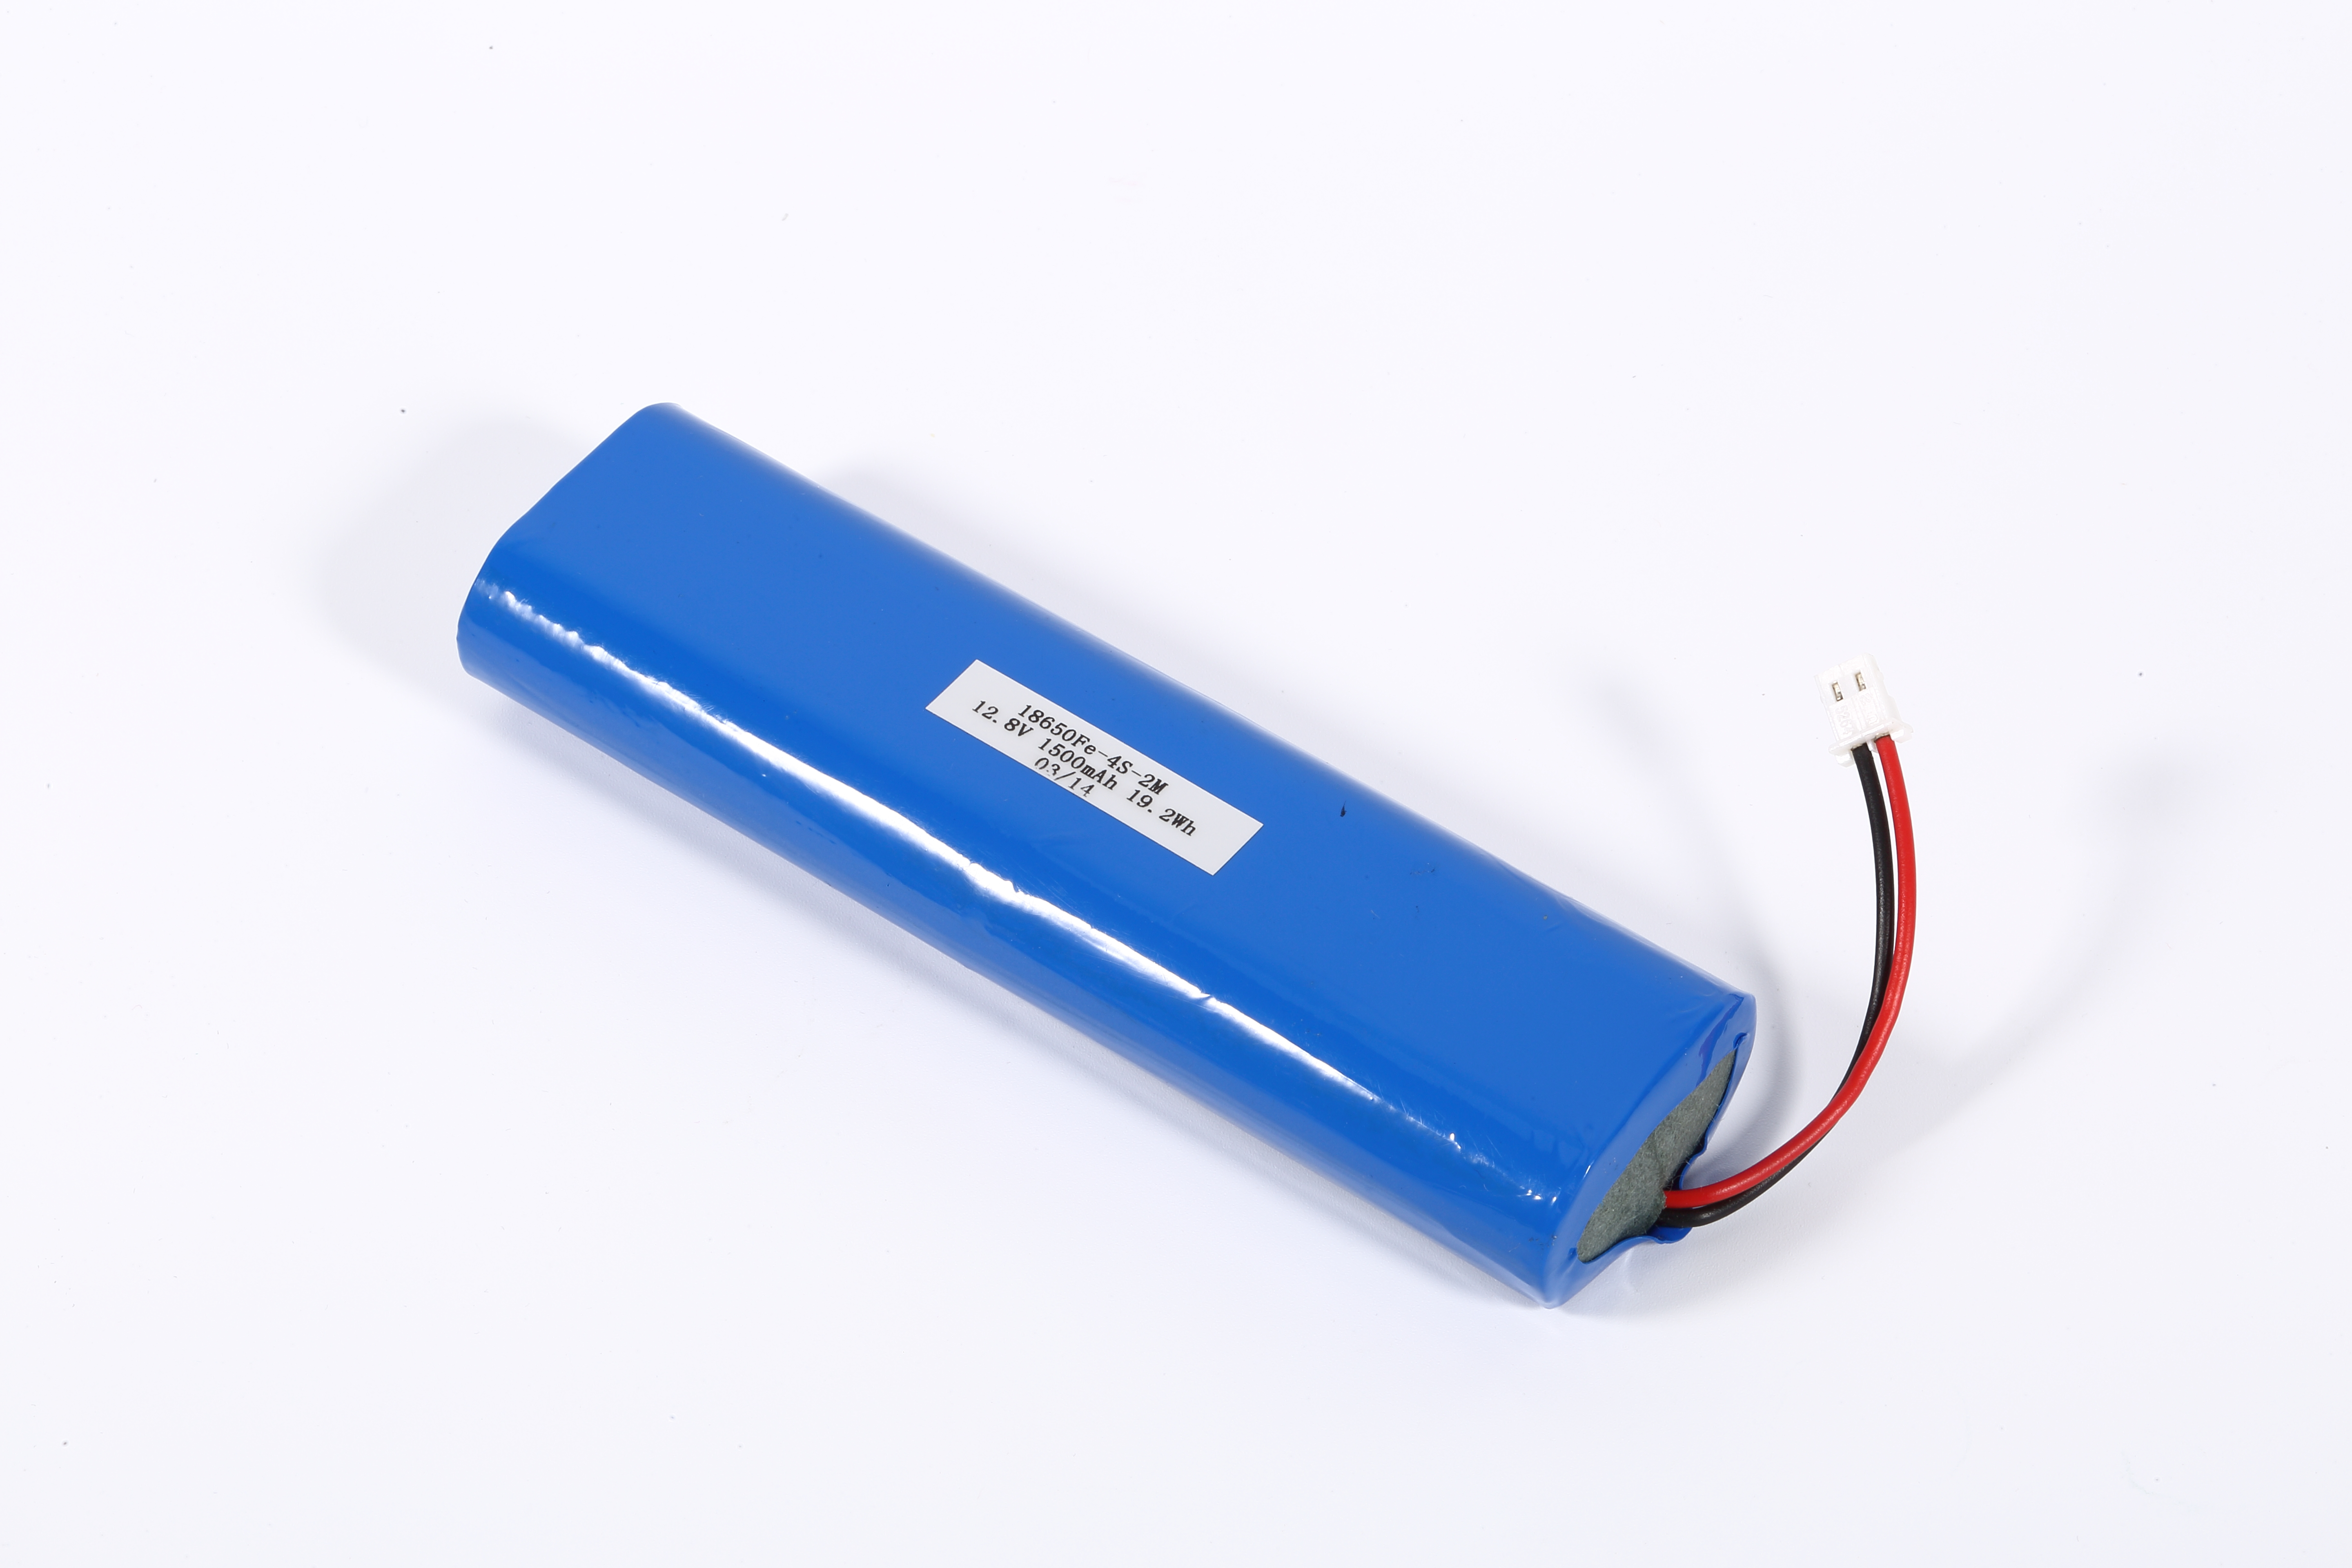 Bateria de lítio recarregável 18650 4S 14.4V 2900mAh para aparelho elétrico